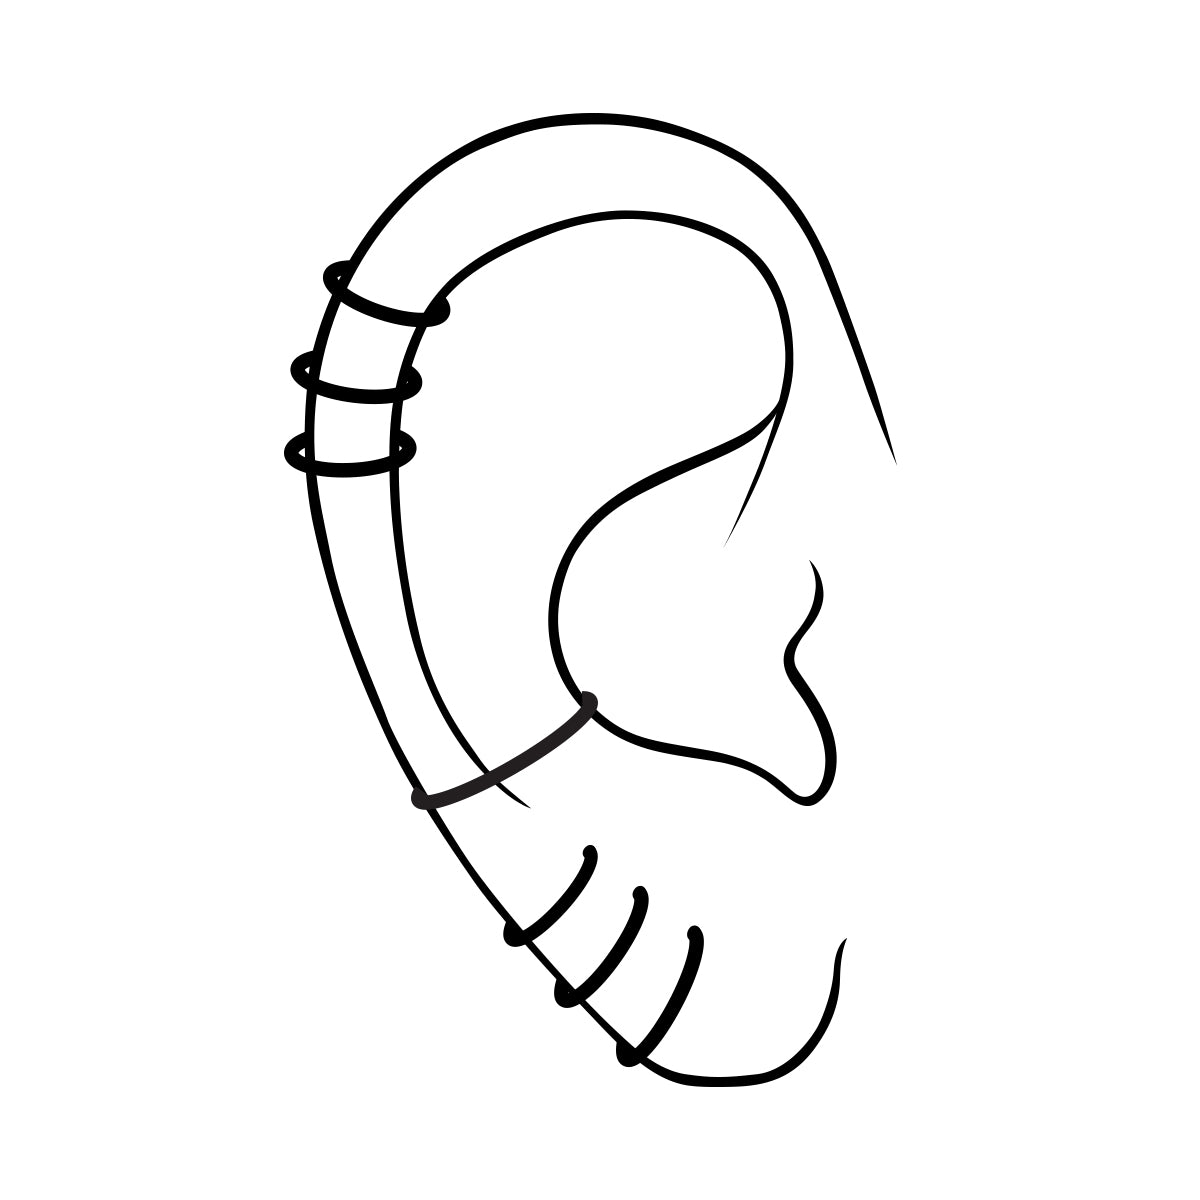 Steel hoop earring